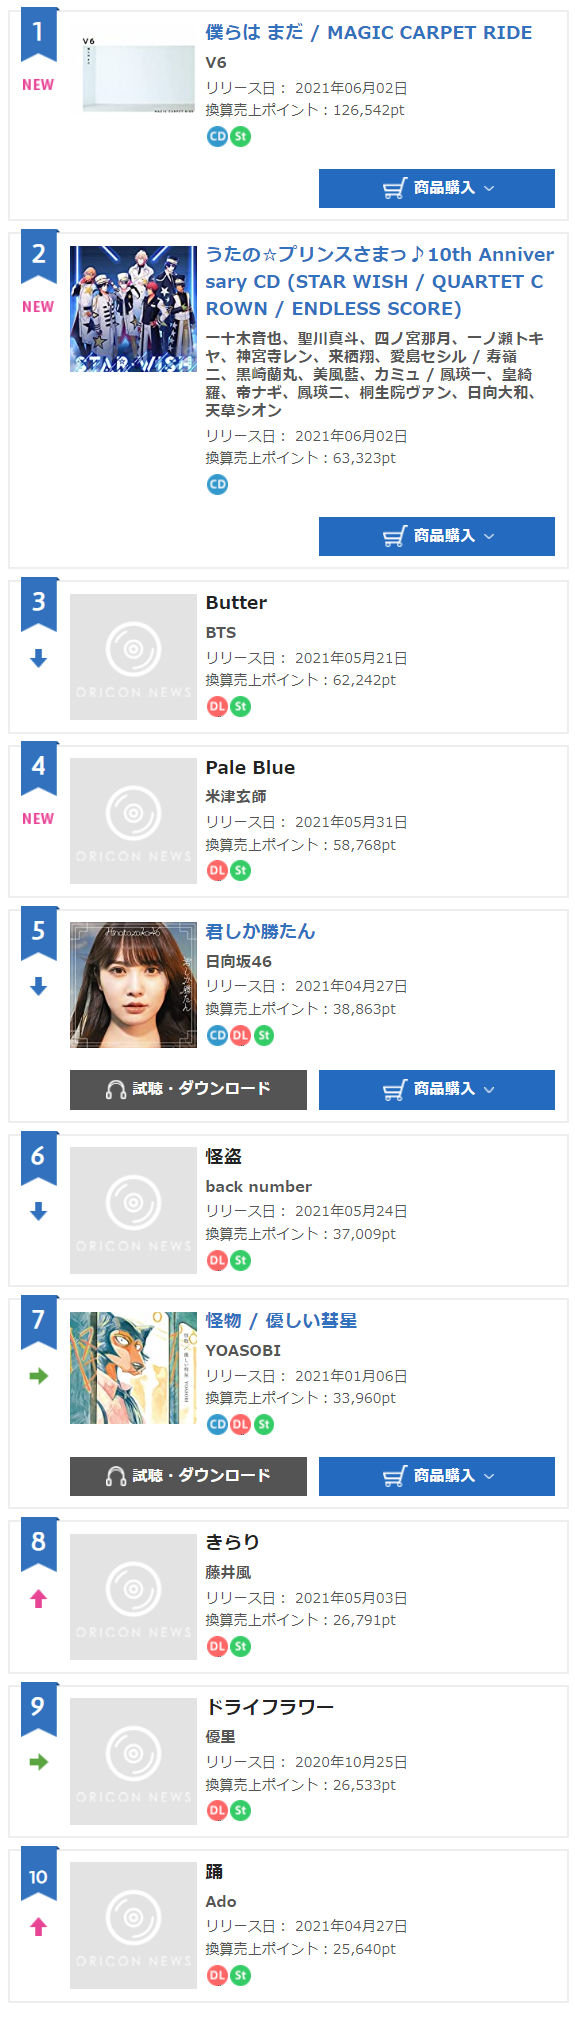 杰尼斯事务所 Oricon音乐榜单 21 5 31 6 6排行榜 沪江日语